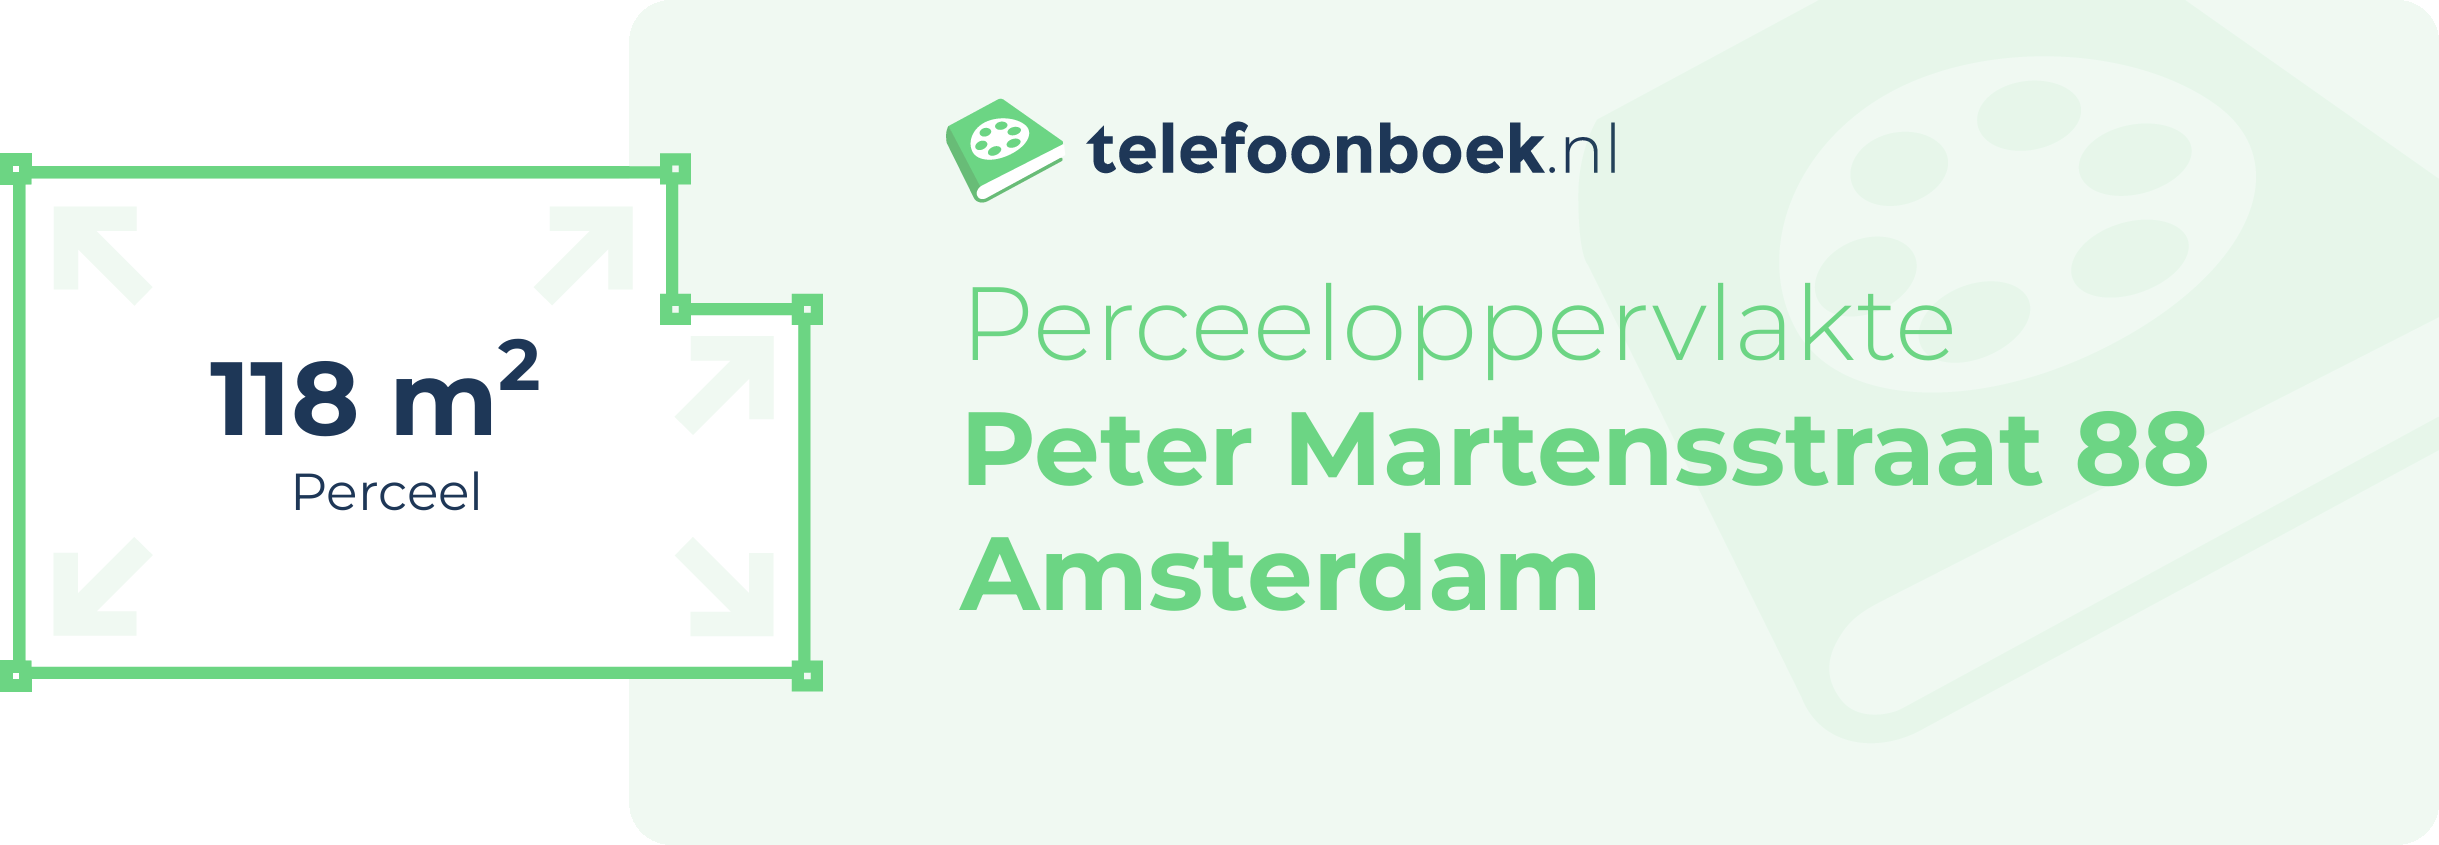 Perceeloppervlakte Peter Martensstraat 88 Amsterdam